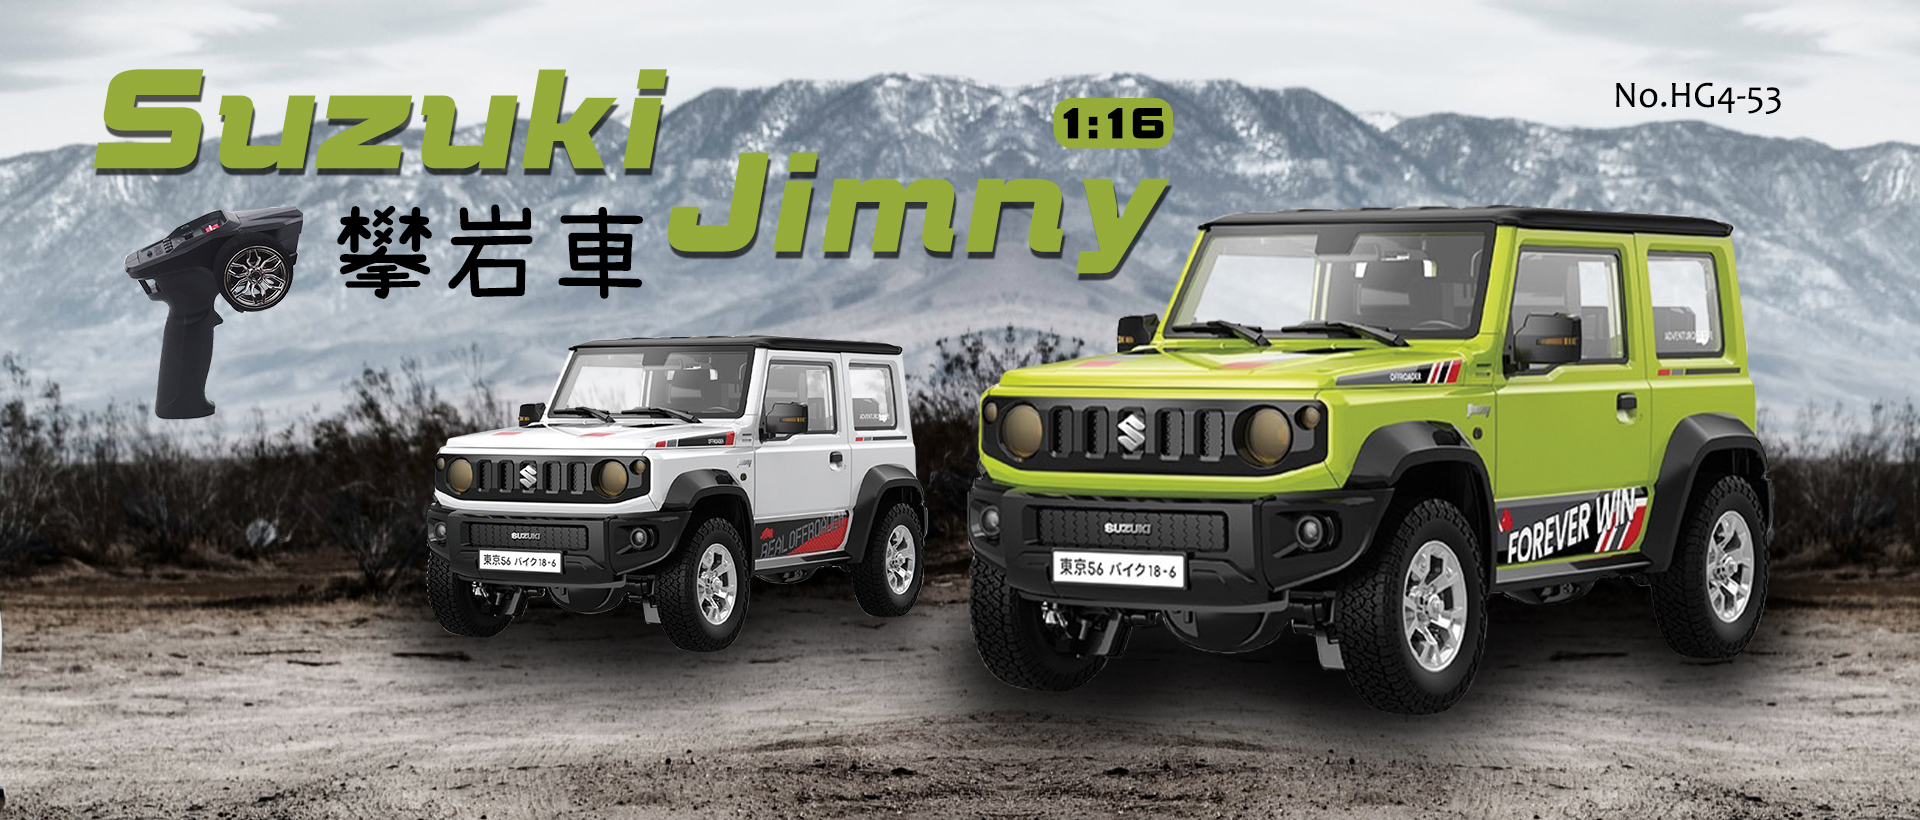 1:16 Suzuki Jimny攀岩車(高階版)